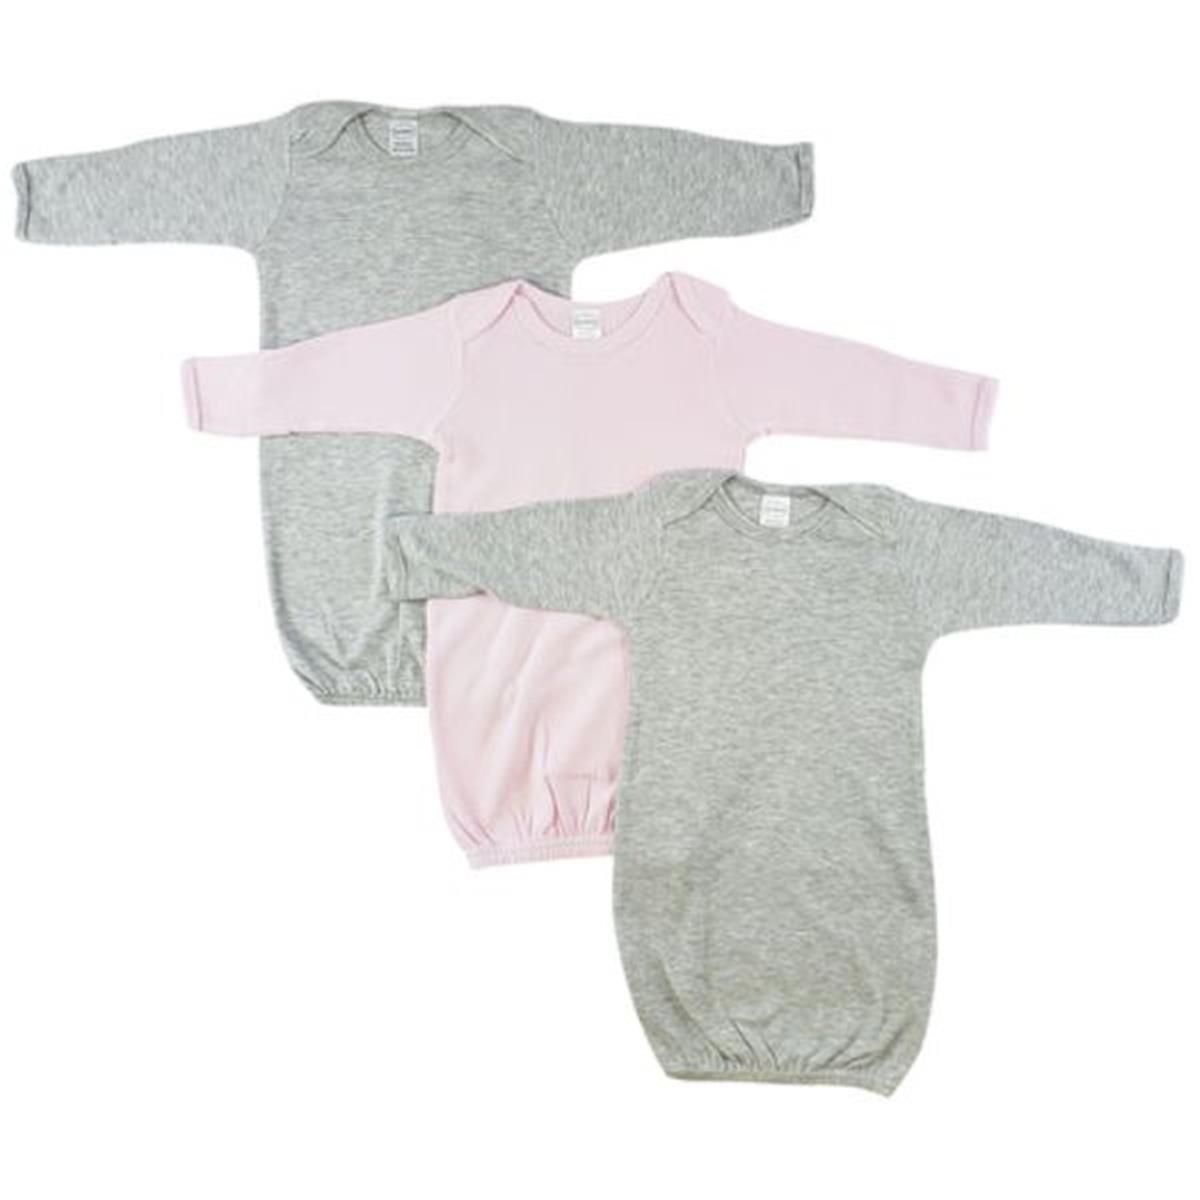 Bambini LS-0680 Baby Girl Shower Gift Set&#44; White & Pink - Newborn